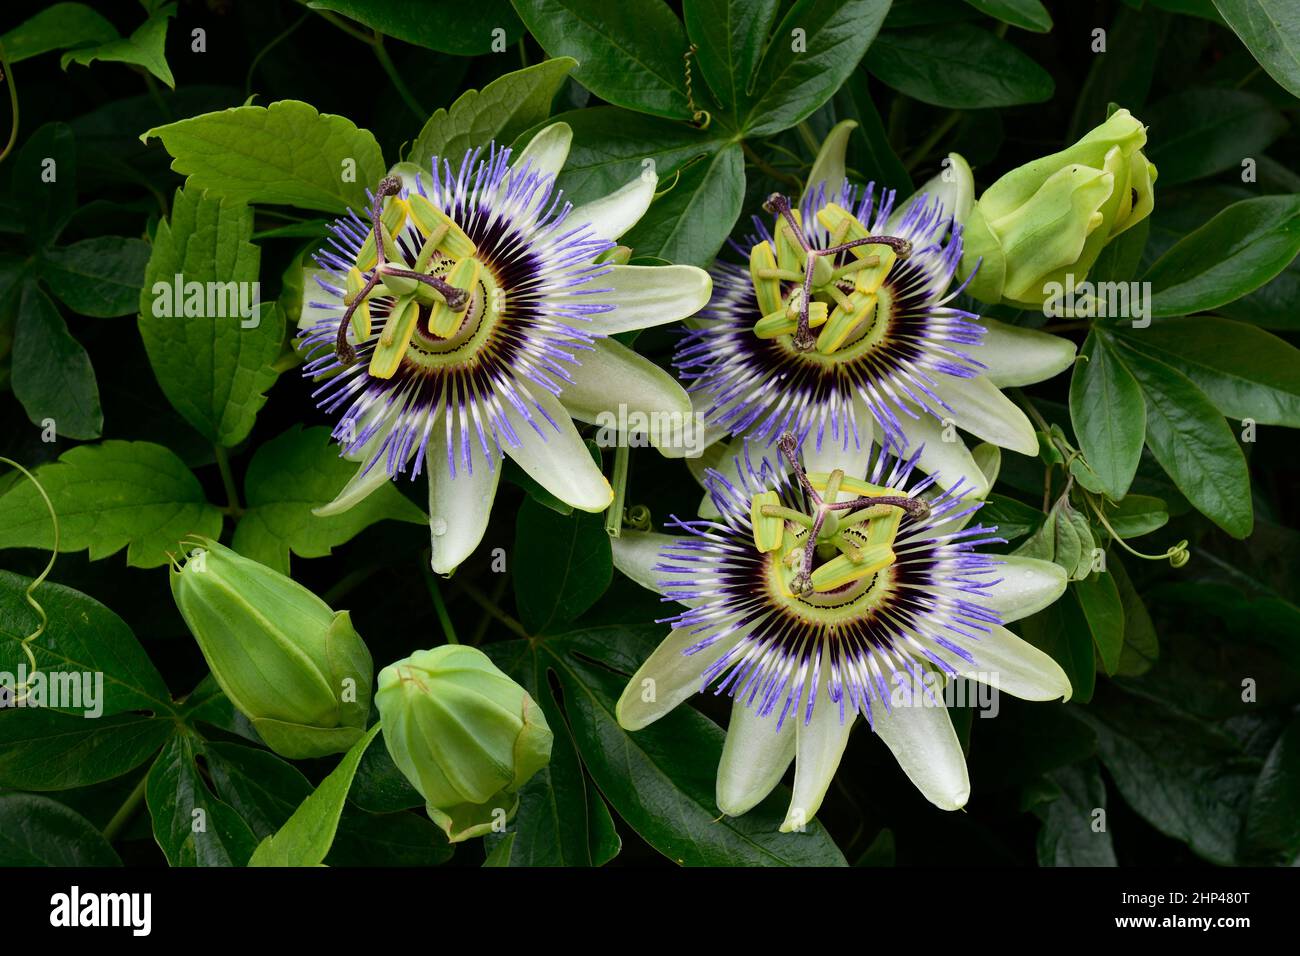 Passionsblume oder Passiflora caerulea. Nahaufnahme von drei Blüten mit hellgrünen Blütenblättern mit einem blauen Stachelring um eine grüne Mitte. Stockfoto